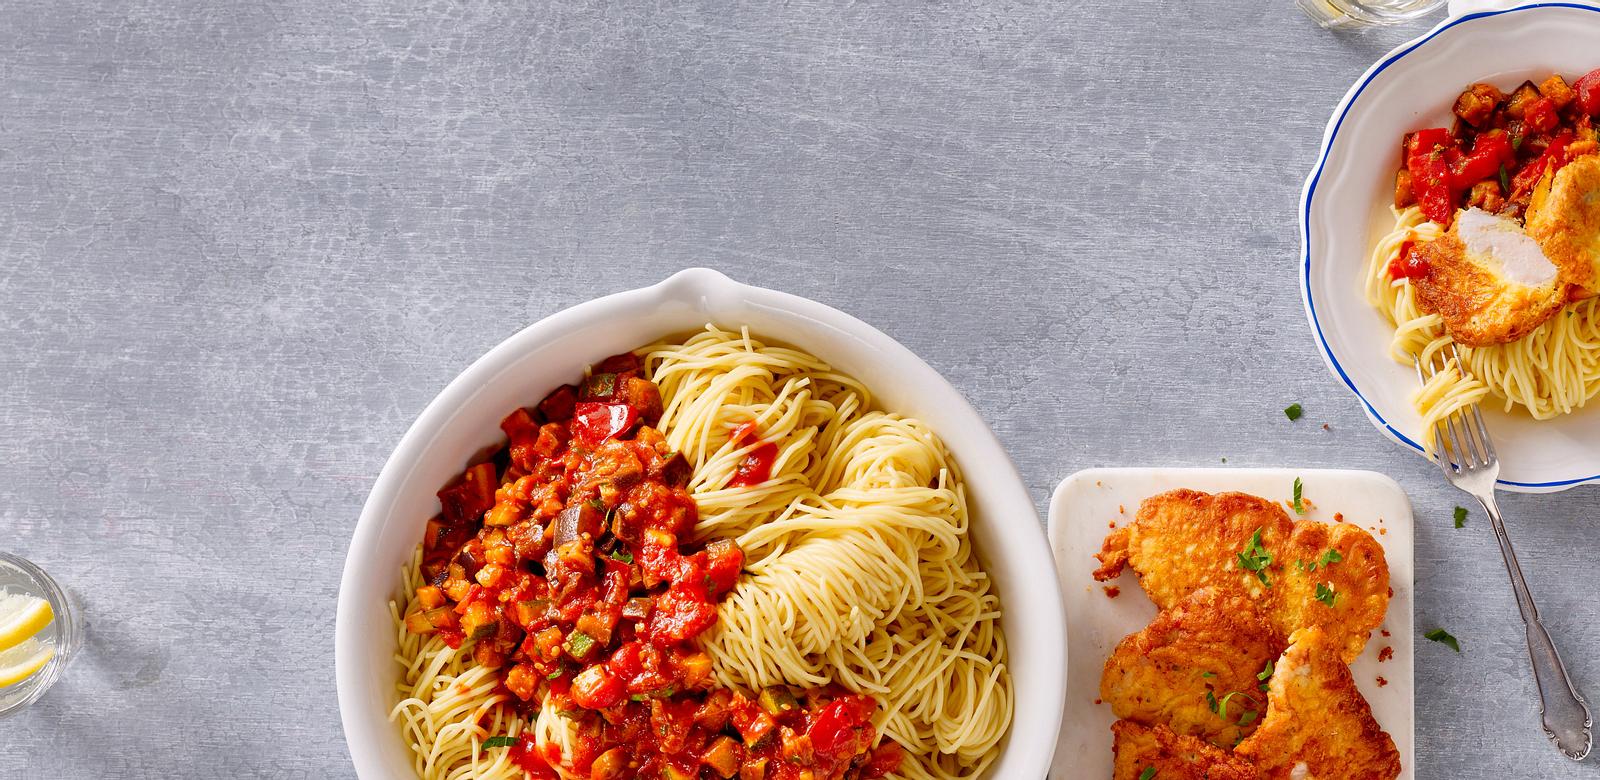 Spaghetti mit Gemüsesoße und Puten-Piccata Rezept | LECKER